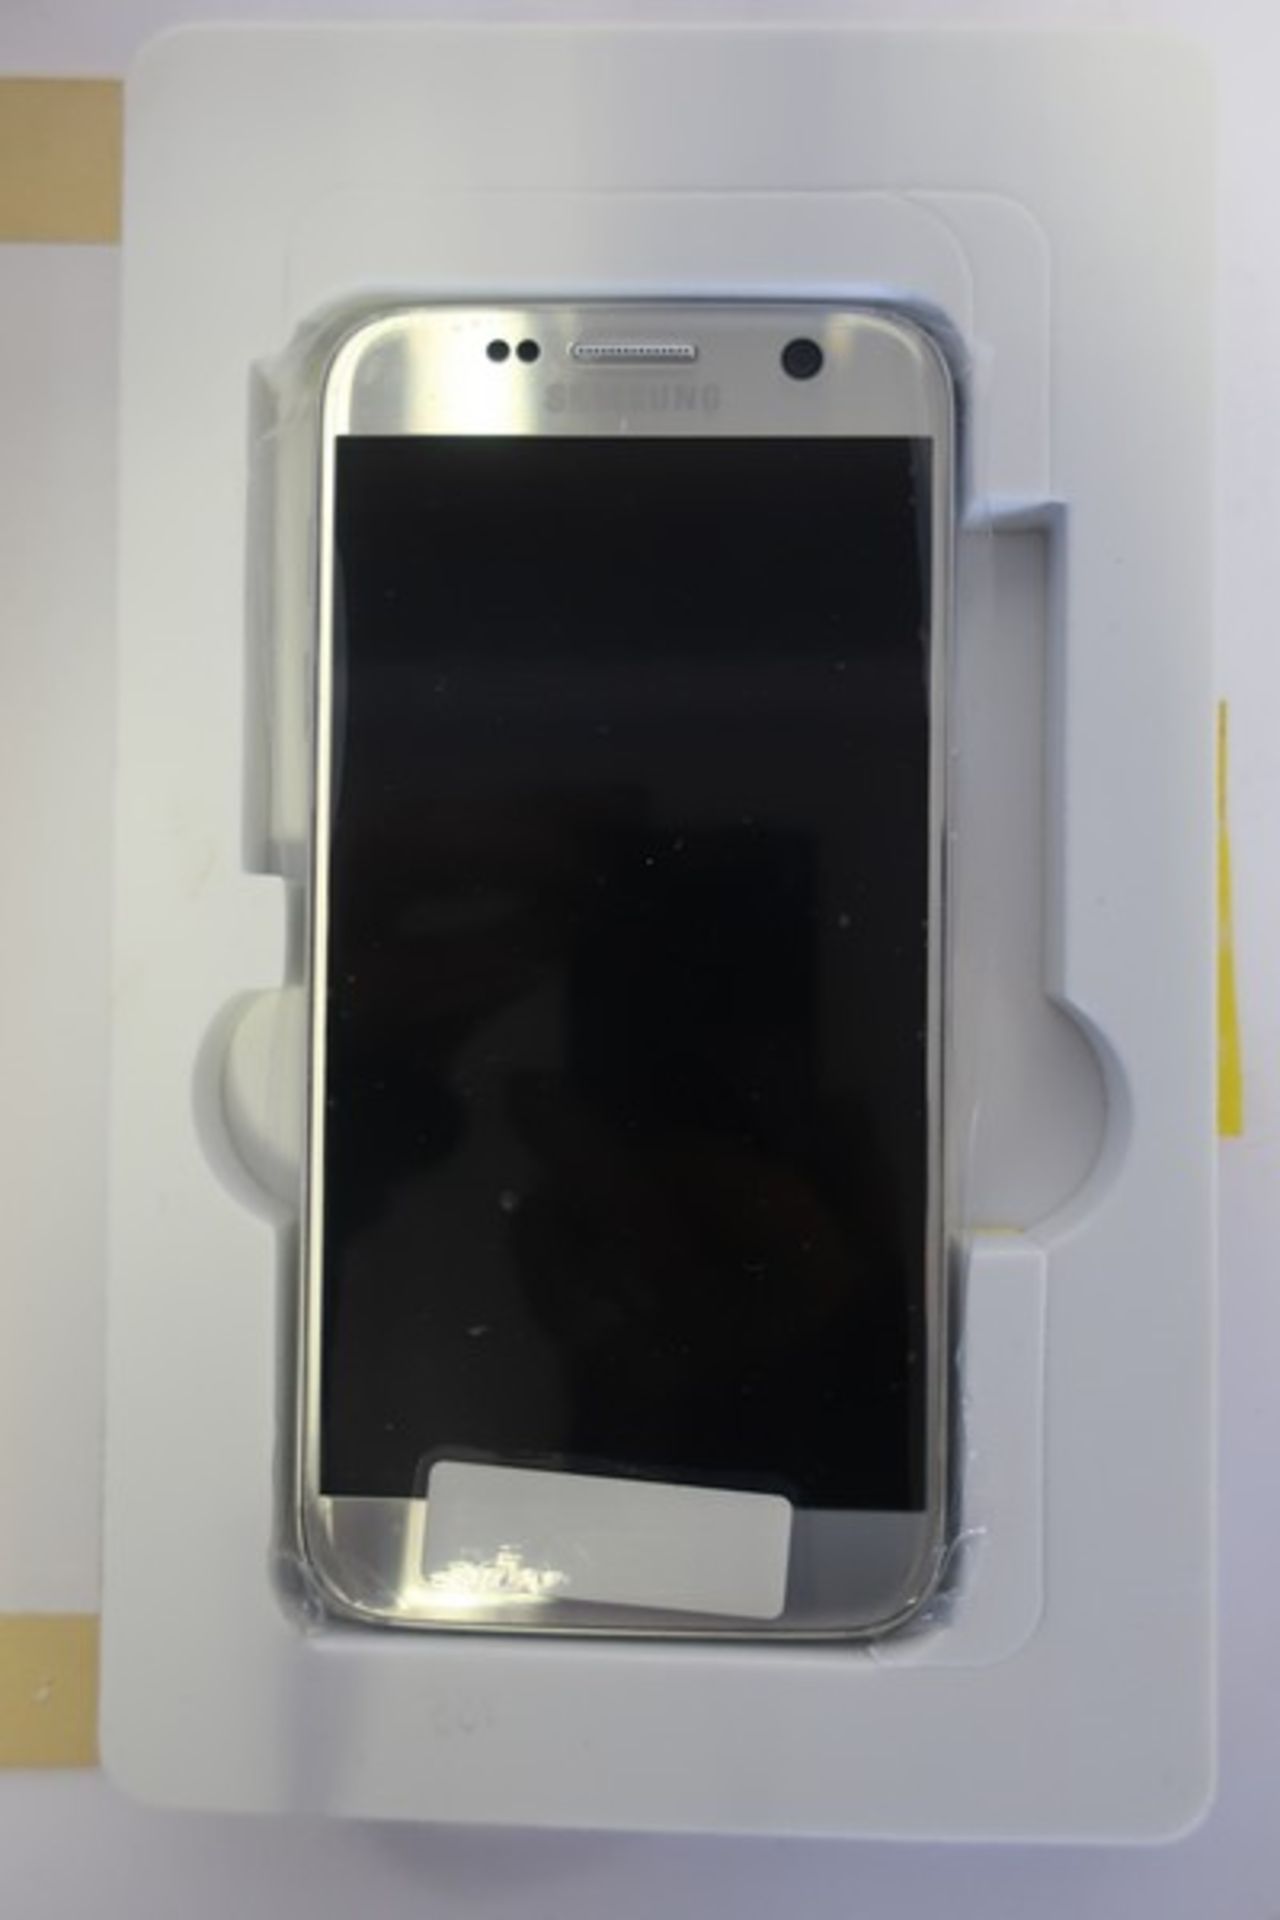 A refurbished Samsung Galaxy S7 SM-G930F 32GB in Silver (IMEI: 355230084324510).